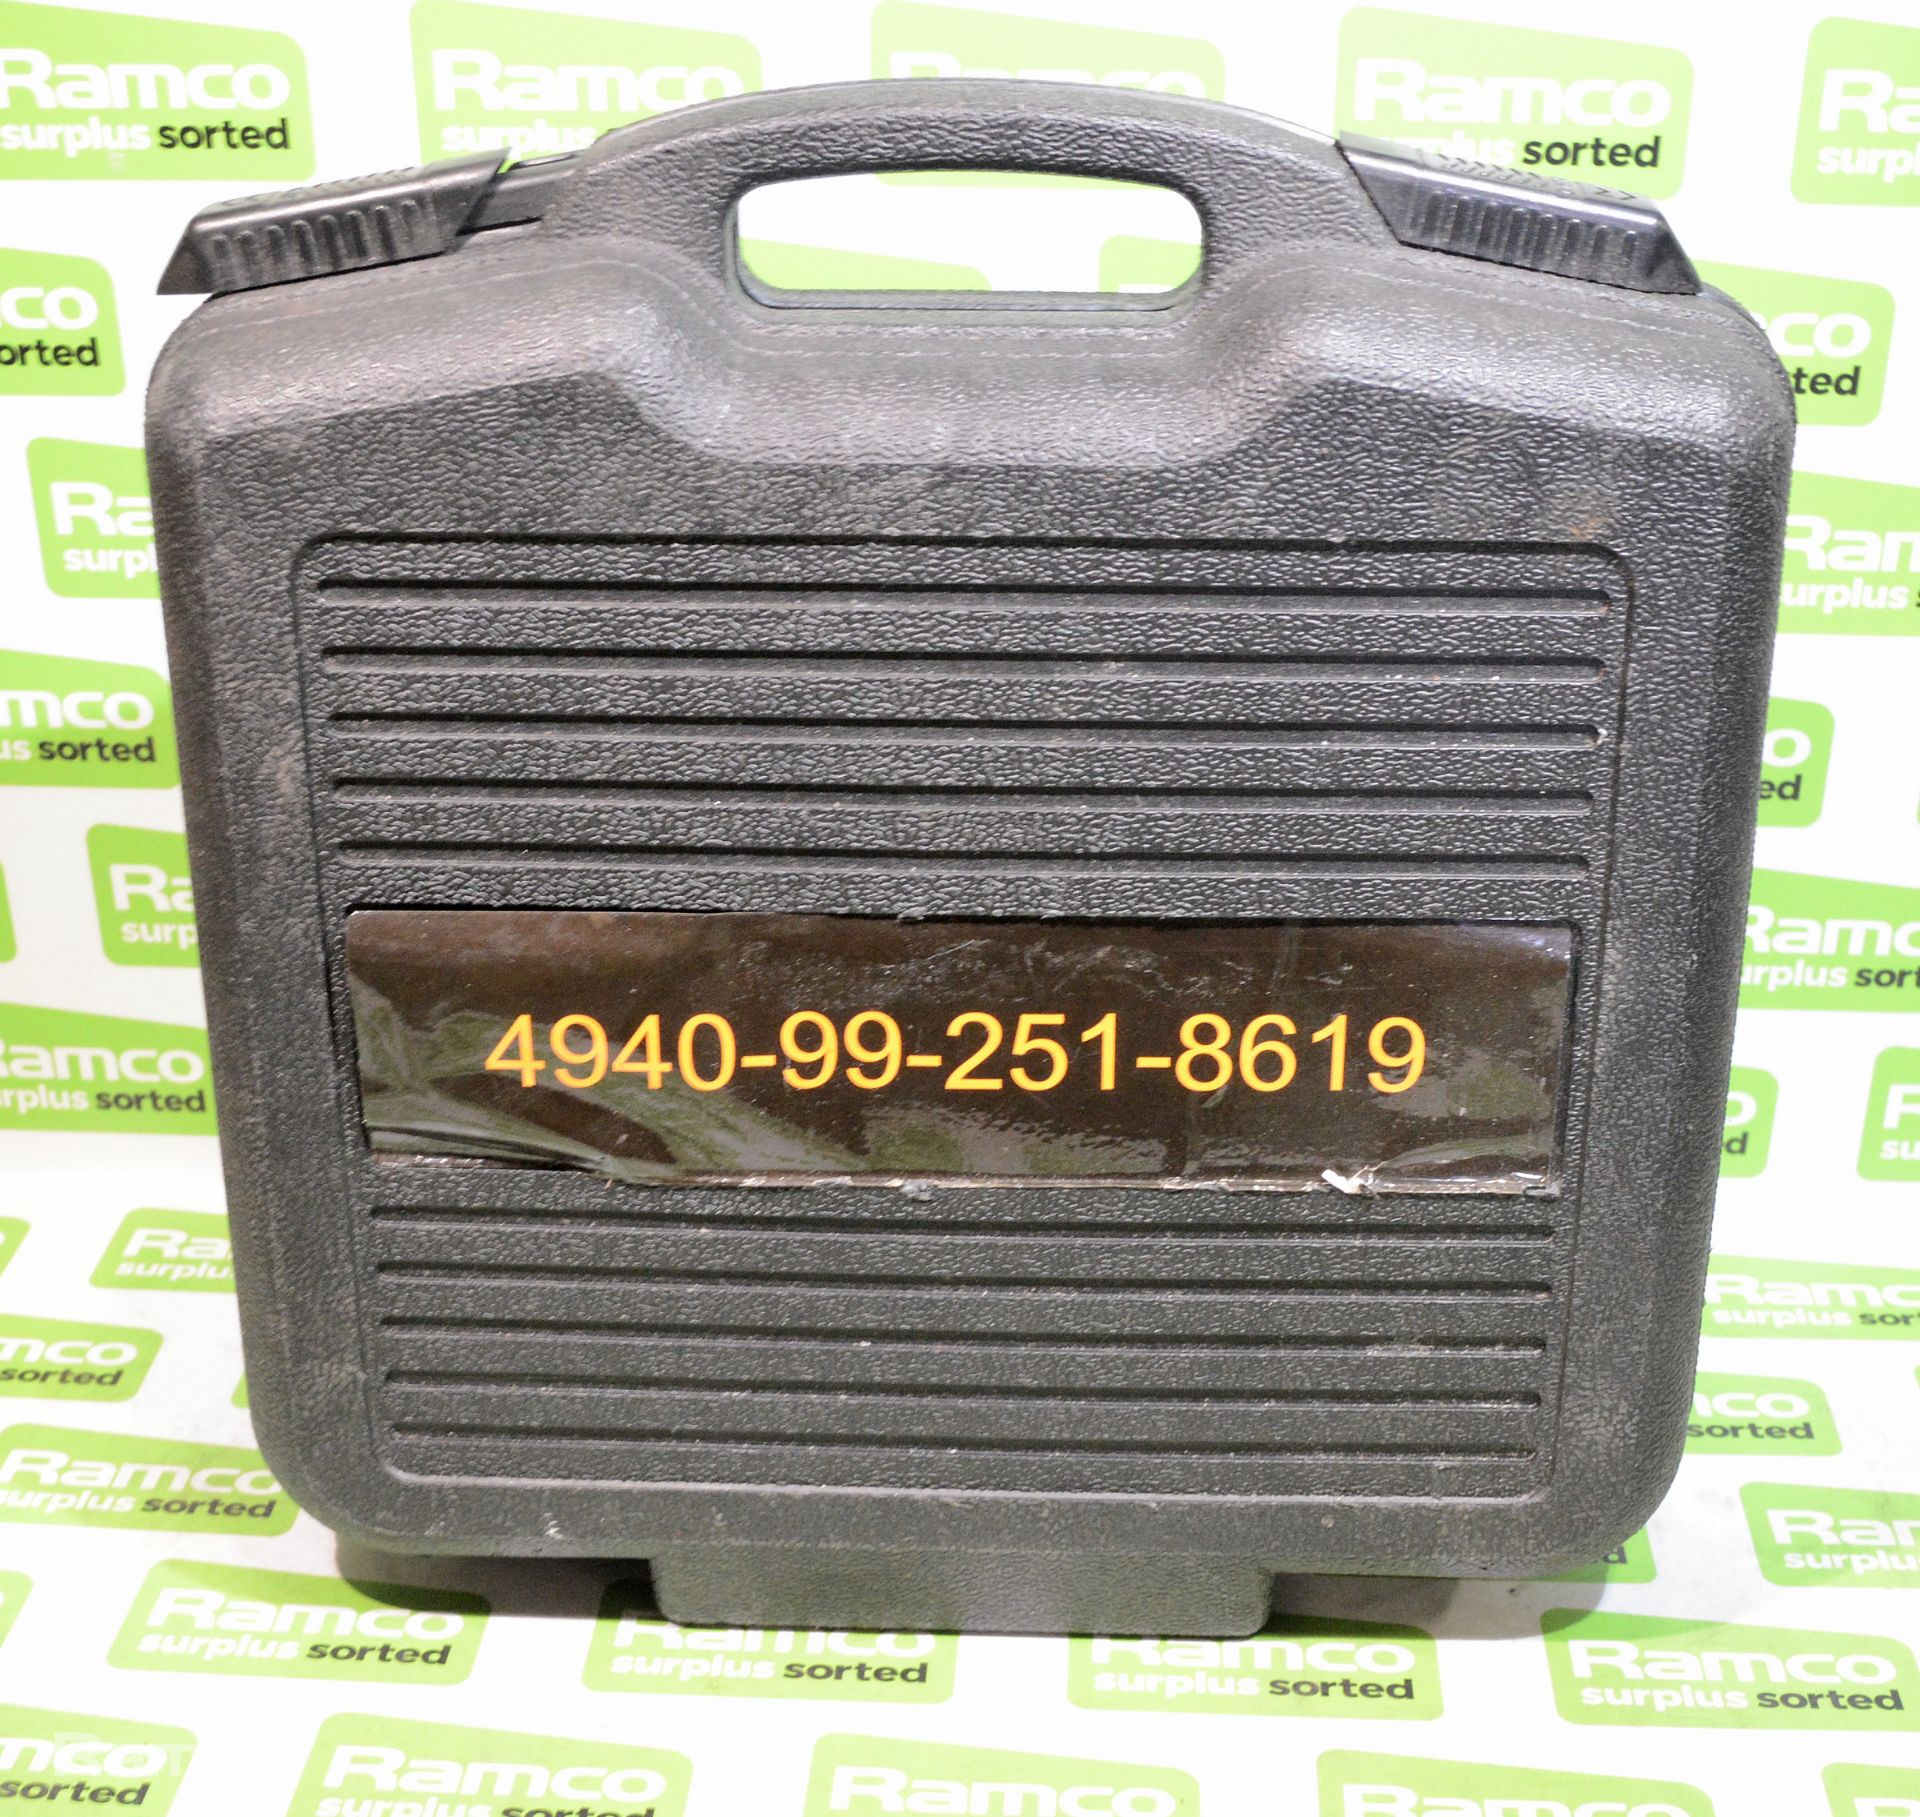 Steinel HG 2310 LCD heat gun & case 110V - Image 4 of 4